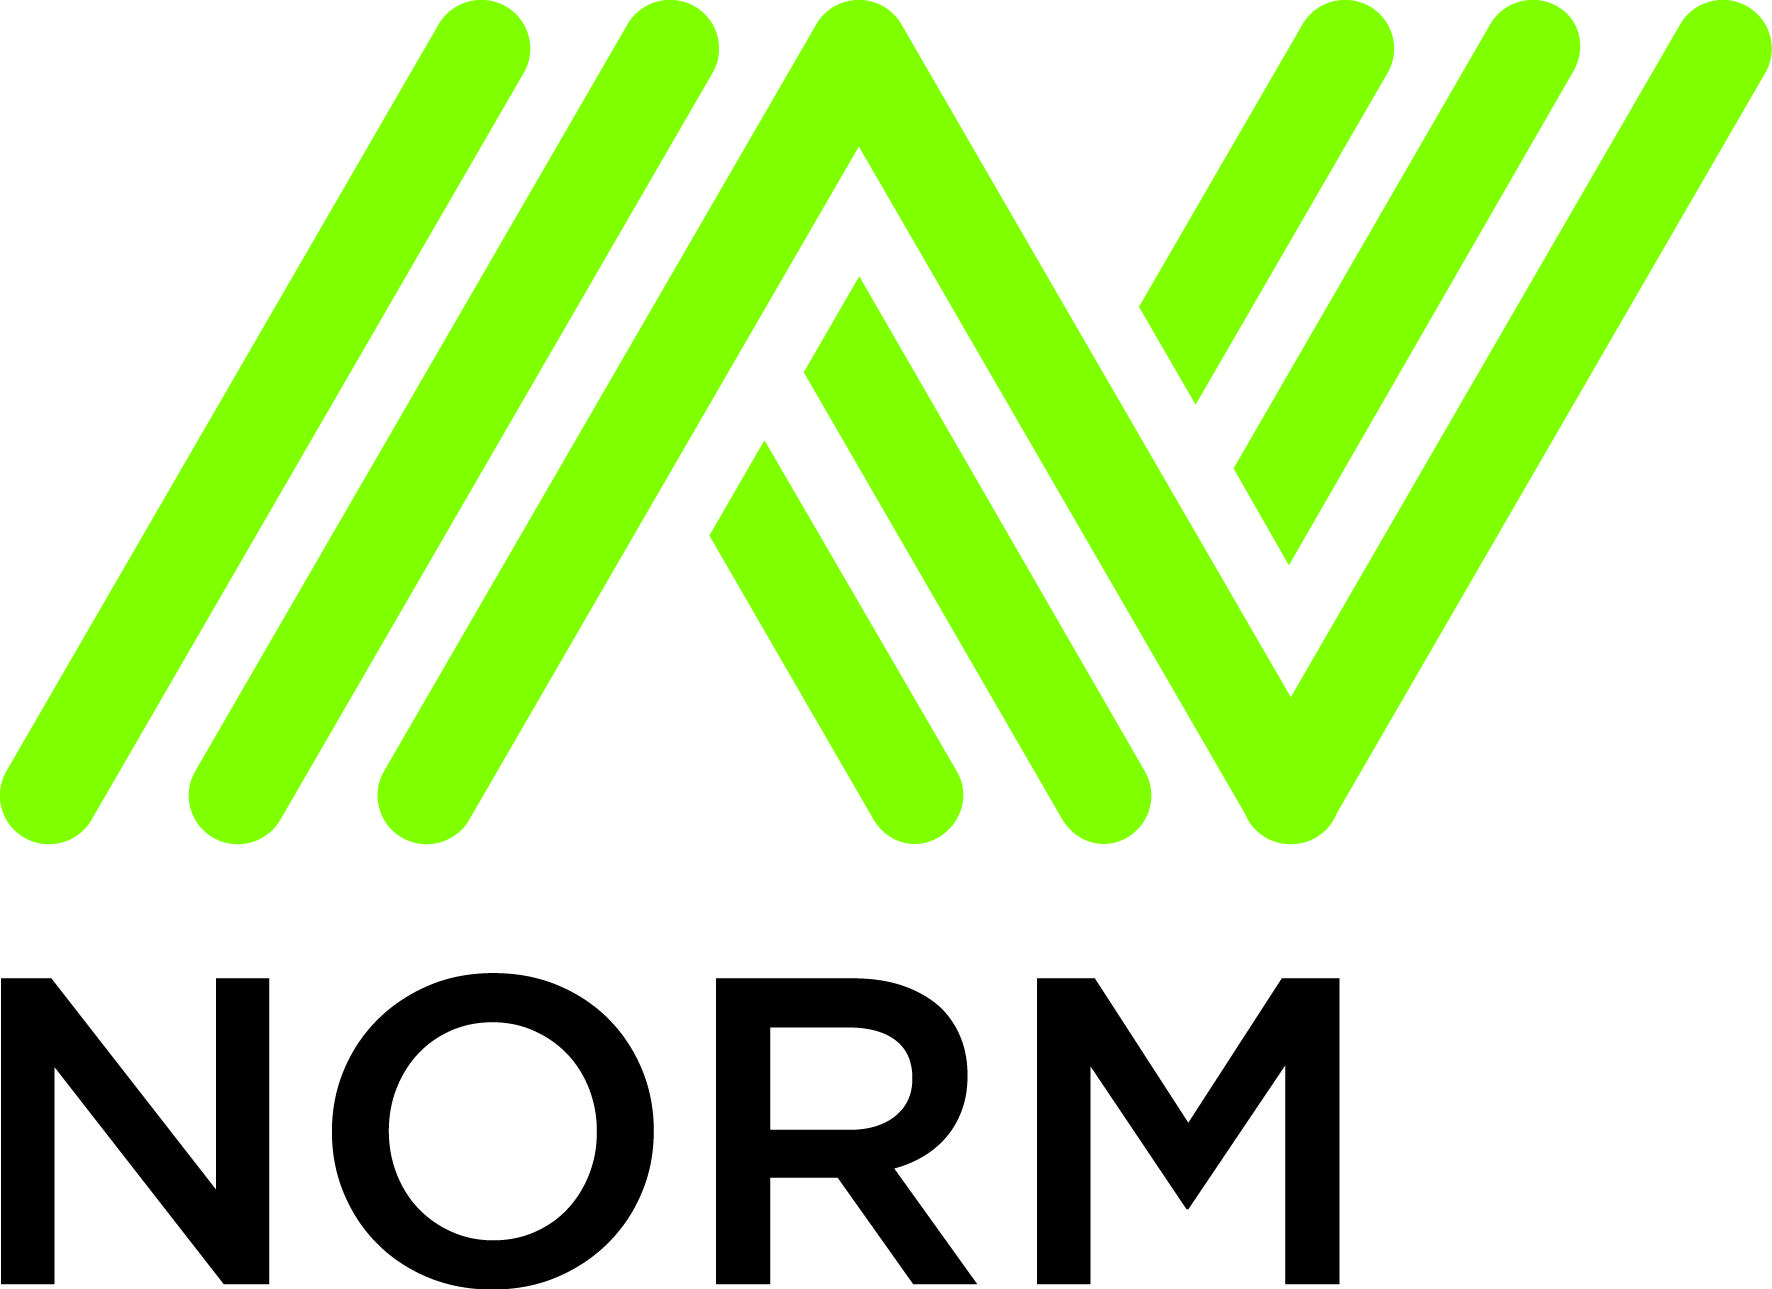 "Norm Sement" zavodunun məhsulları Avropanın ən yüksək ekolojı standartlarına cavab verir